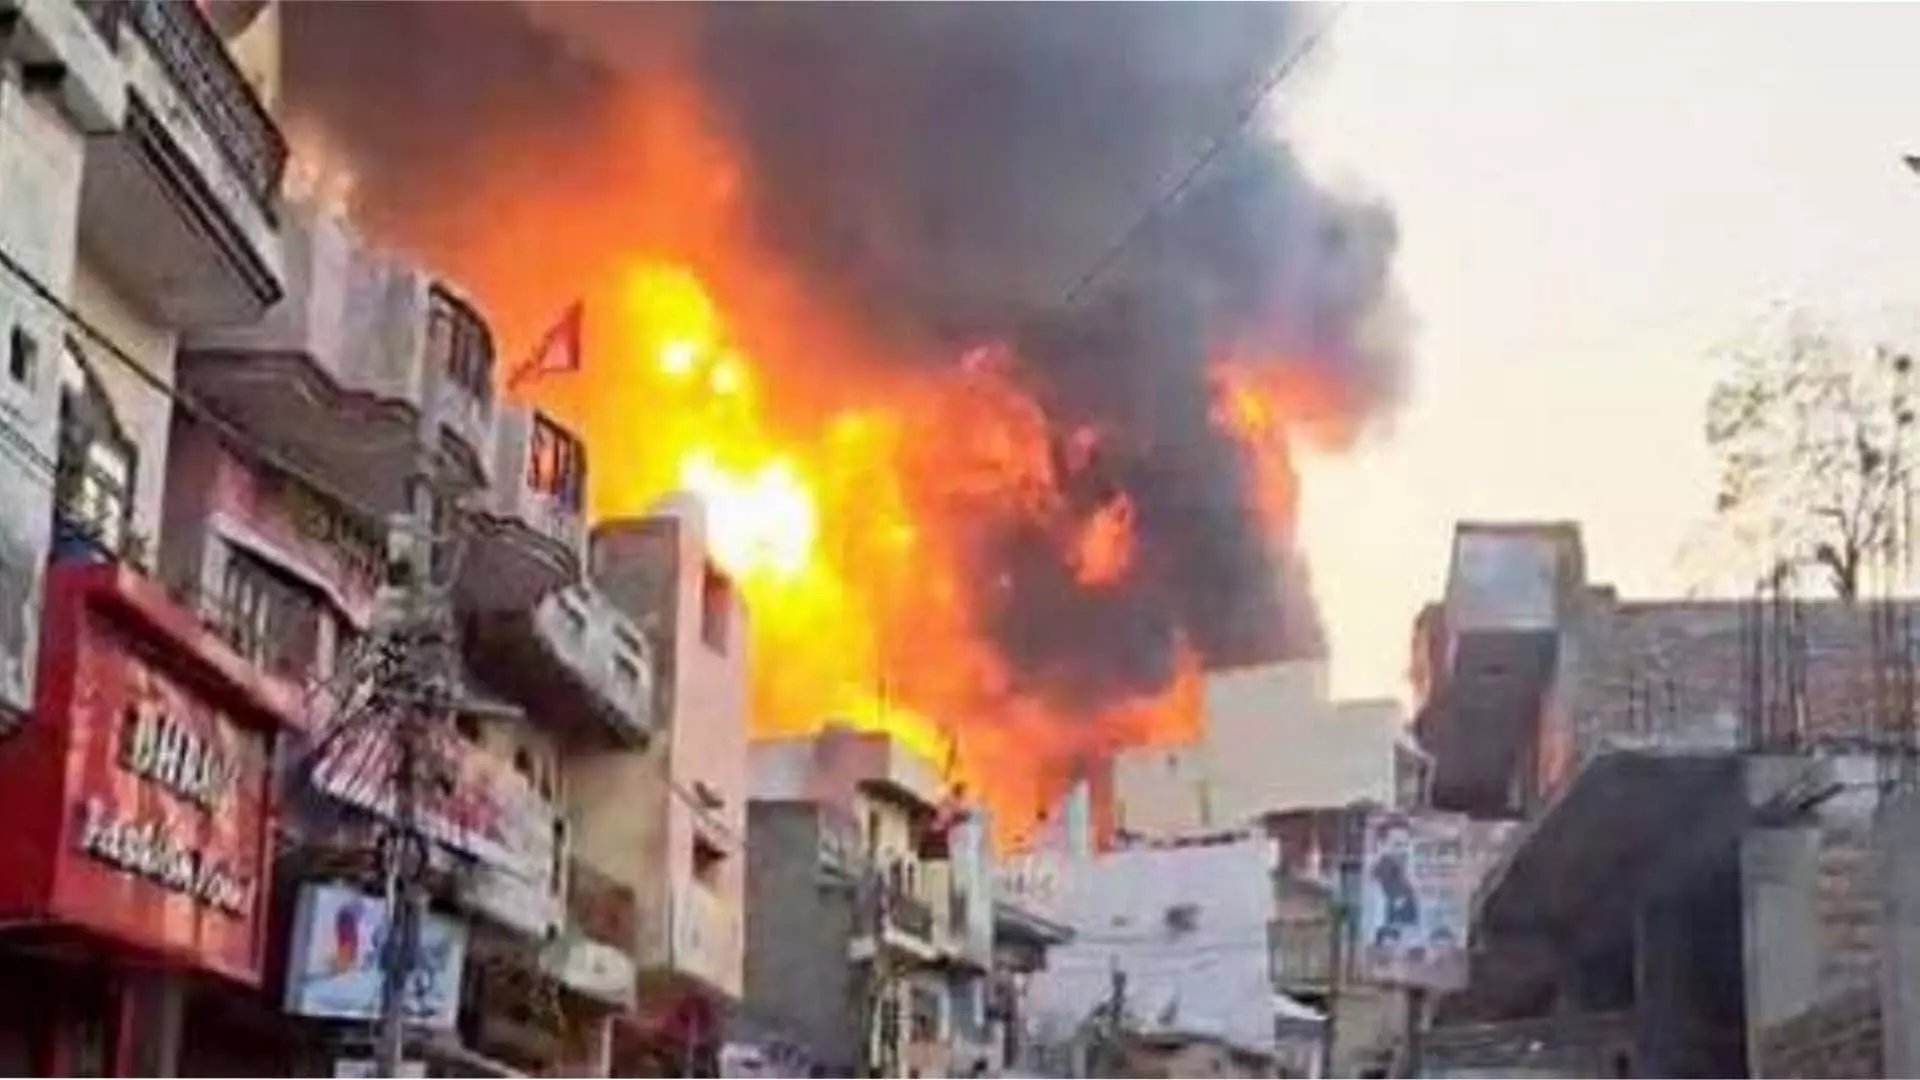 दिल्ली के सदर बाजार में घर में लगी आग, 2 लड़कियों की मौत